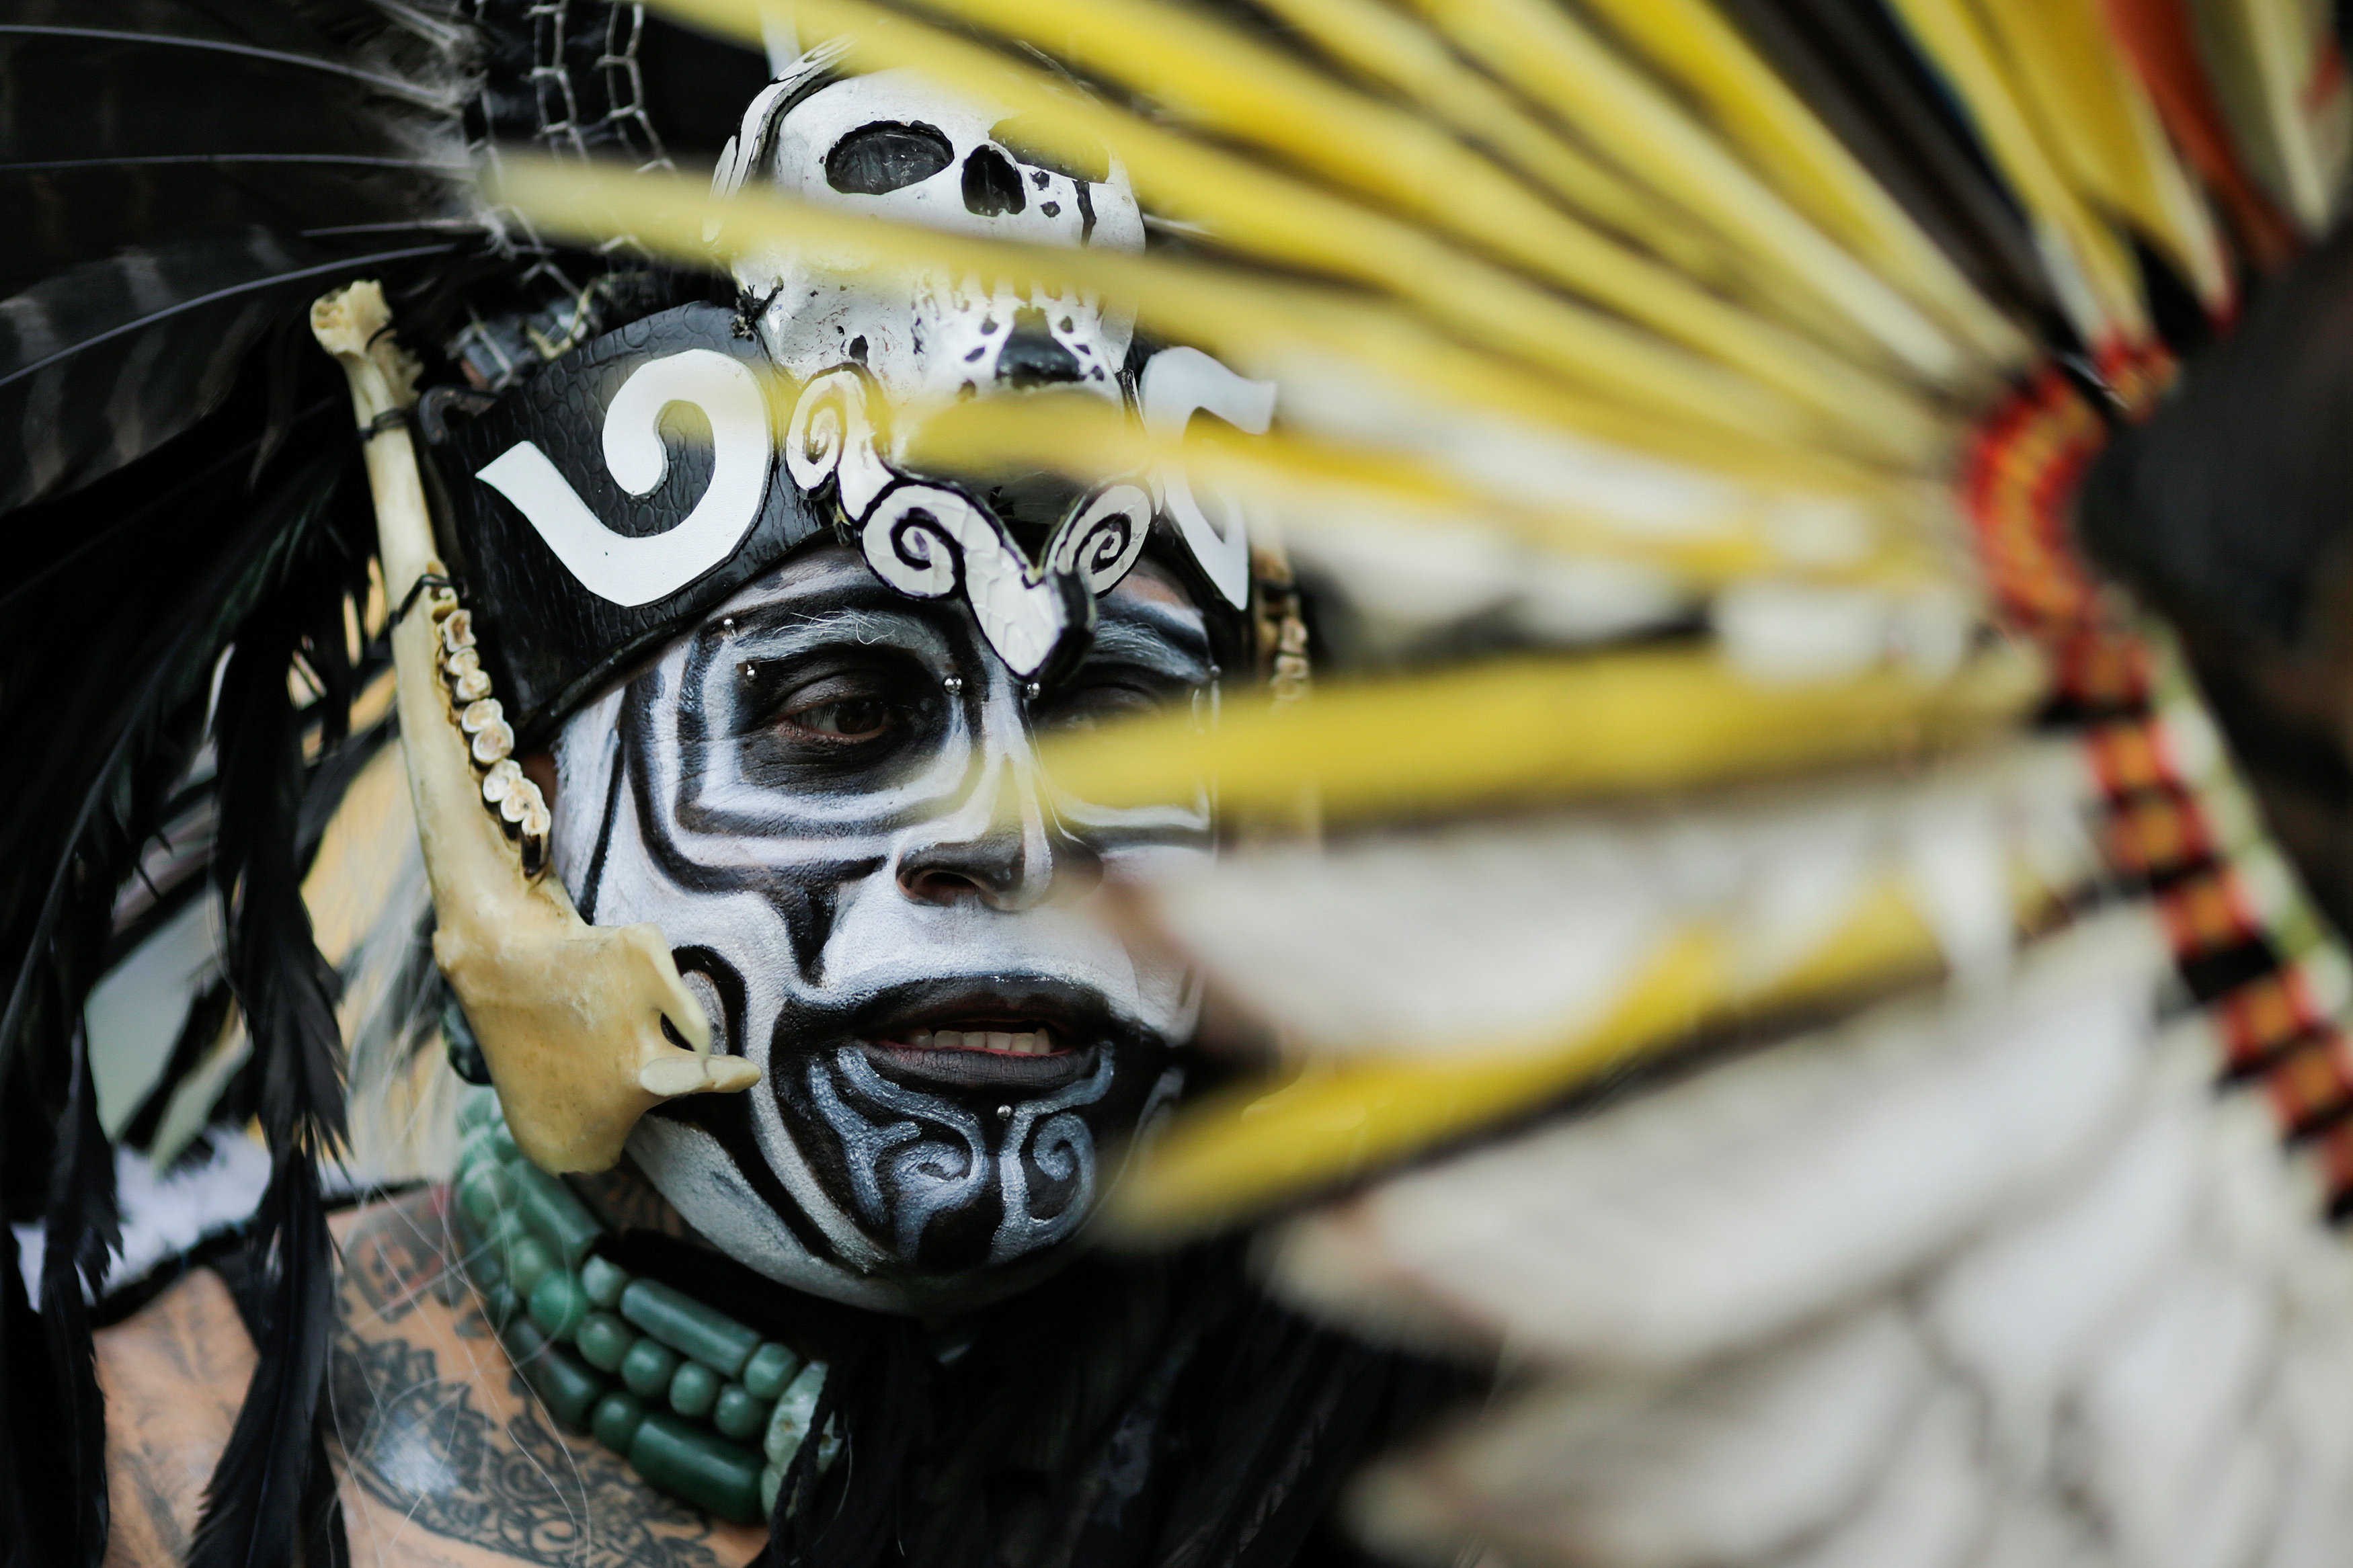 رسومات خاصة على الوجوه خلال احتفالات الأمريكيين الأصليين